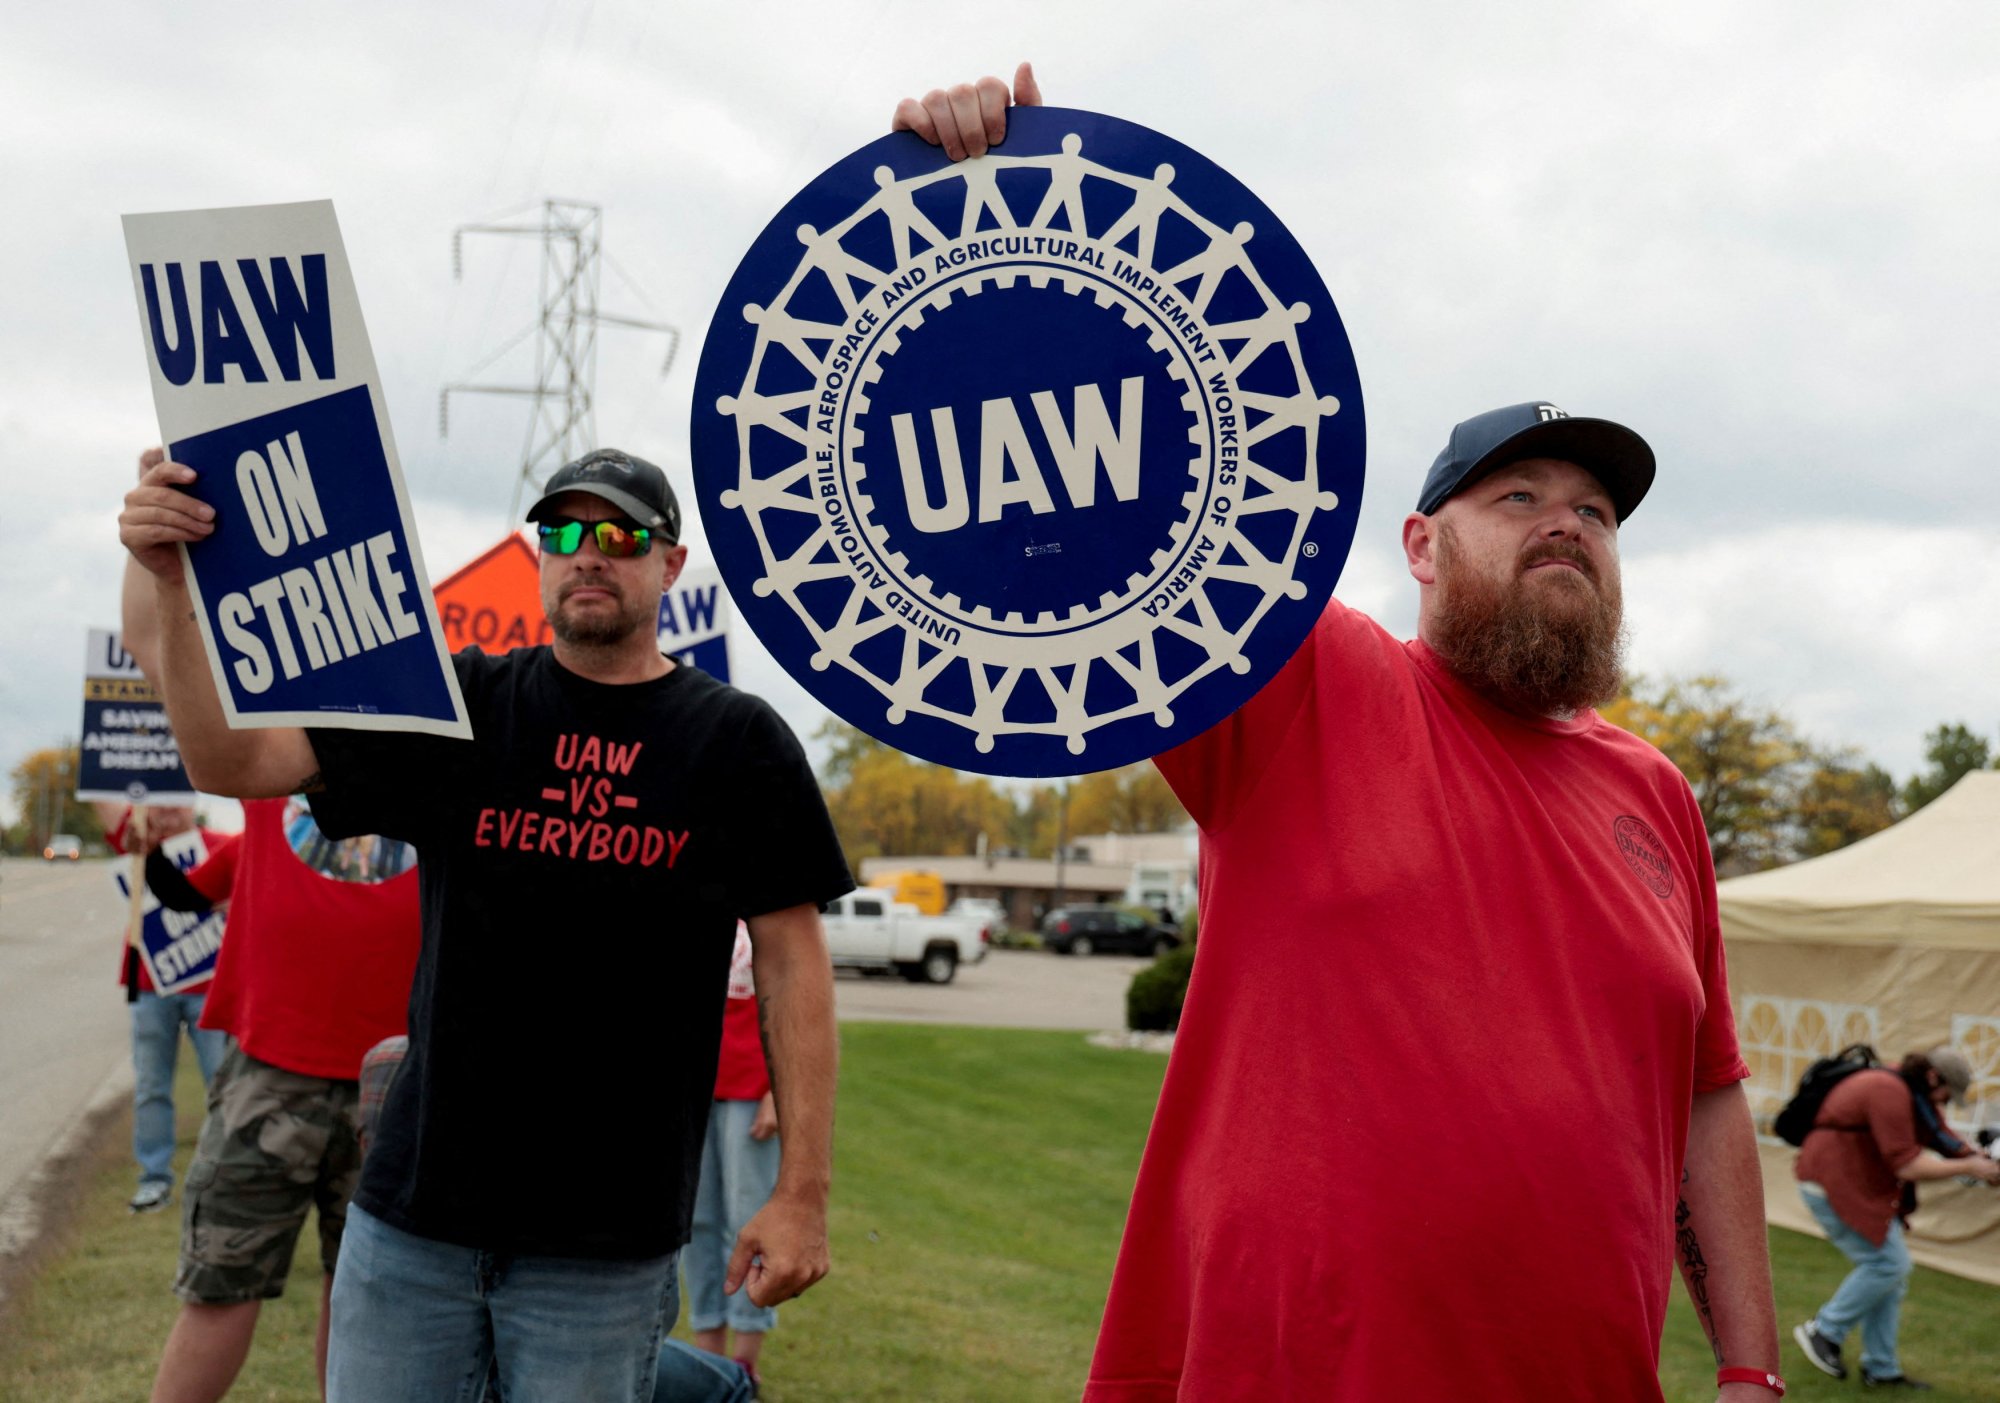 Αυτοκινητοβιομηχανία – ΗΠΑ: Μπορεί η απεργία να τονώσει το εργατικό κίνημα;